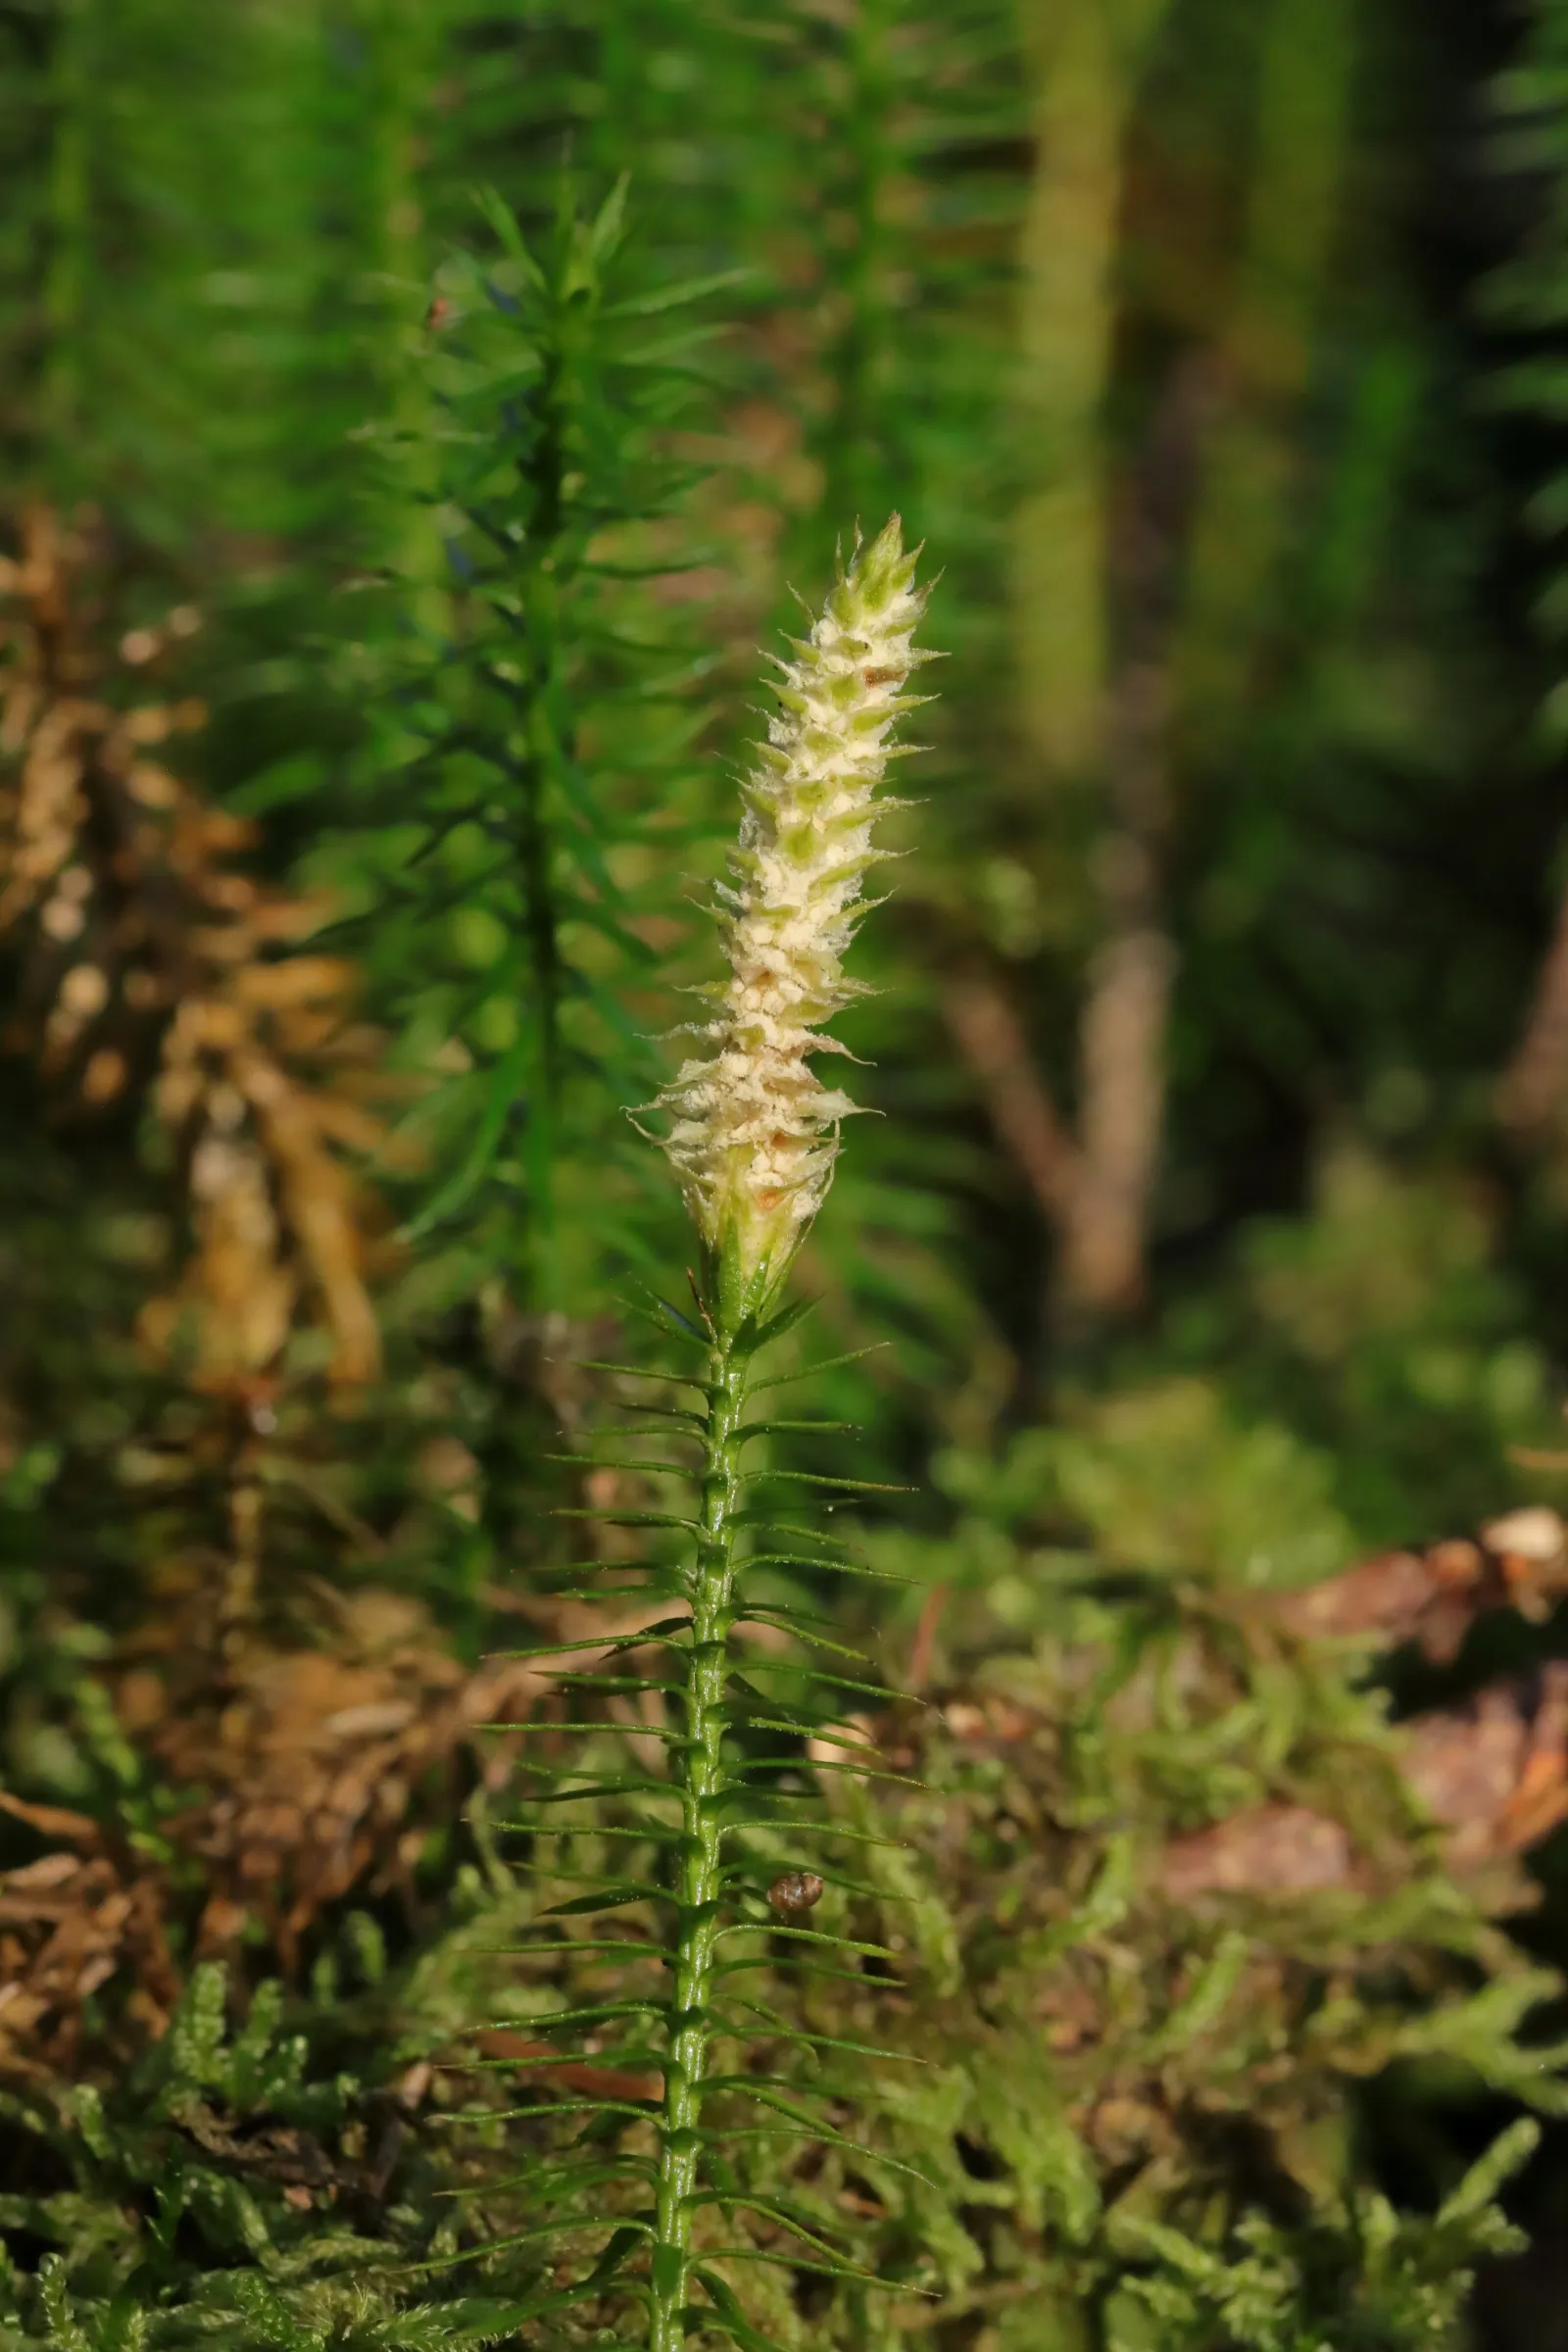 Blütenstand des Wald-Bärlapp - weißes Sporenpulver zwischen den grünen Sporenblättern.